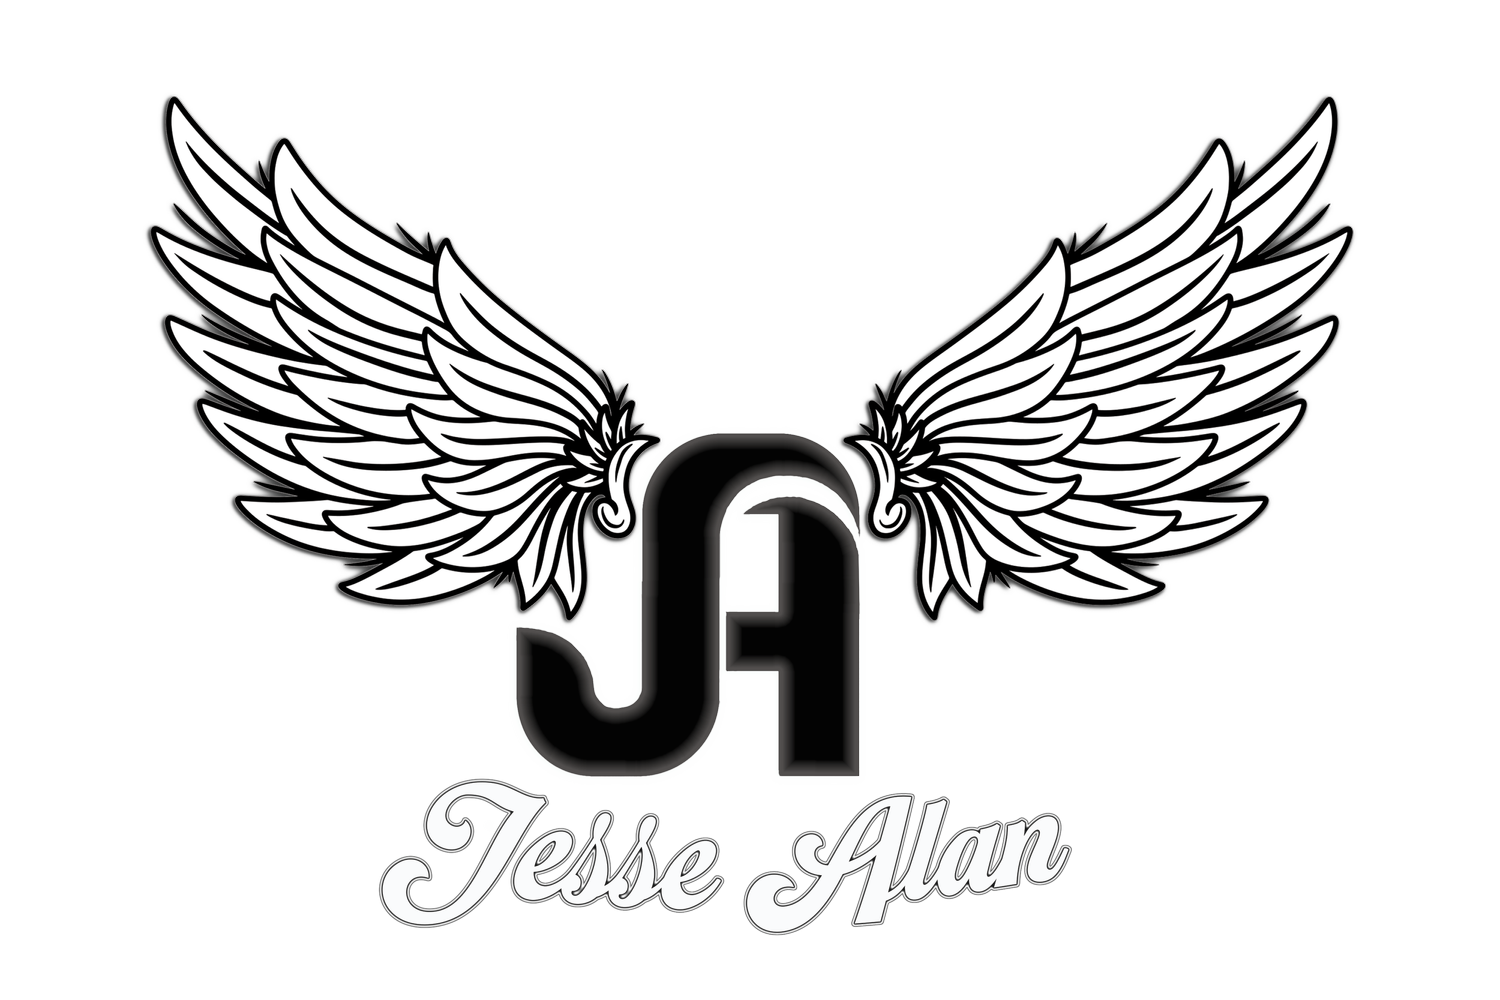 Jesse Alan